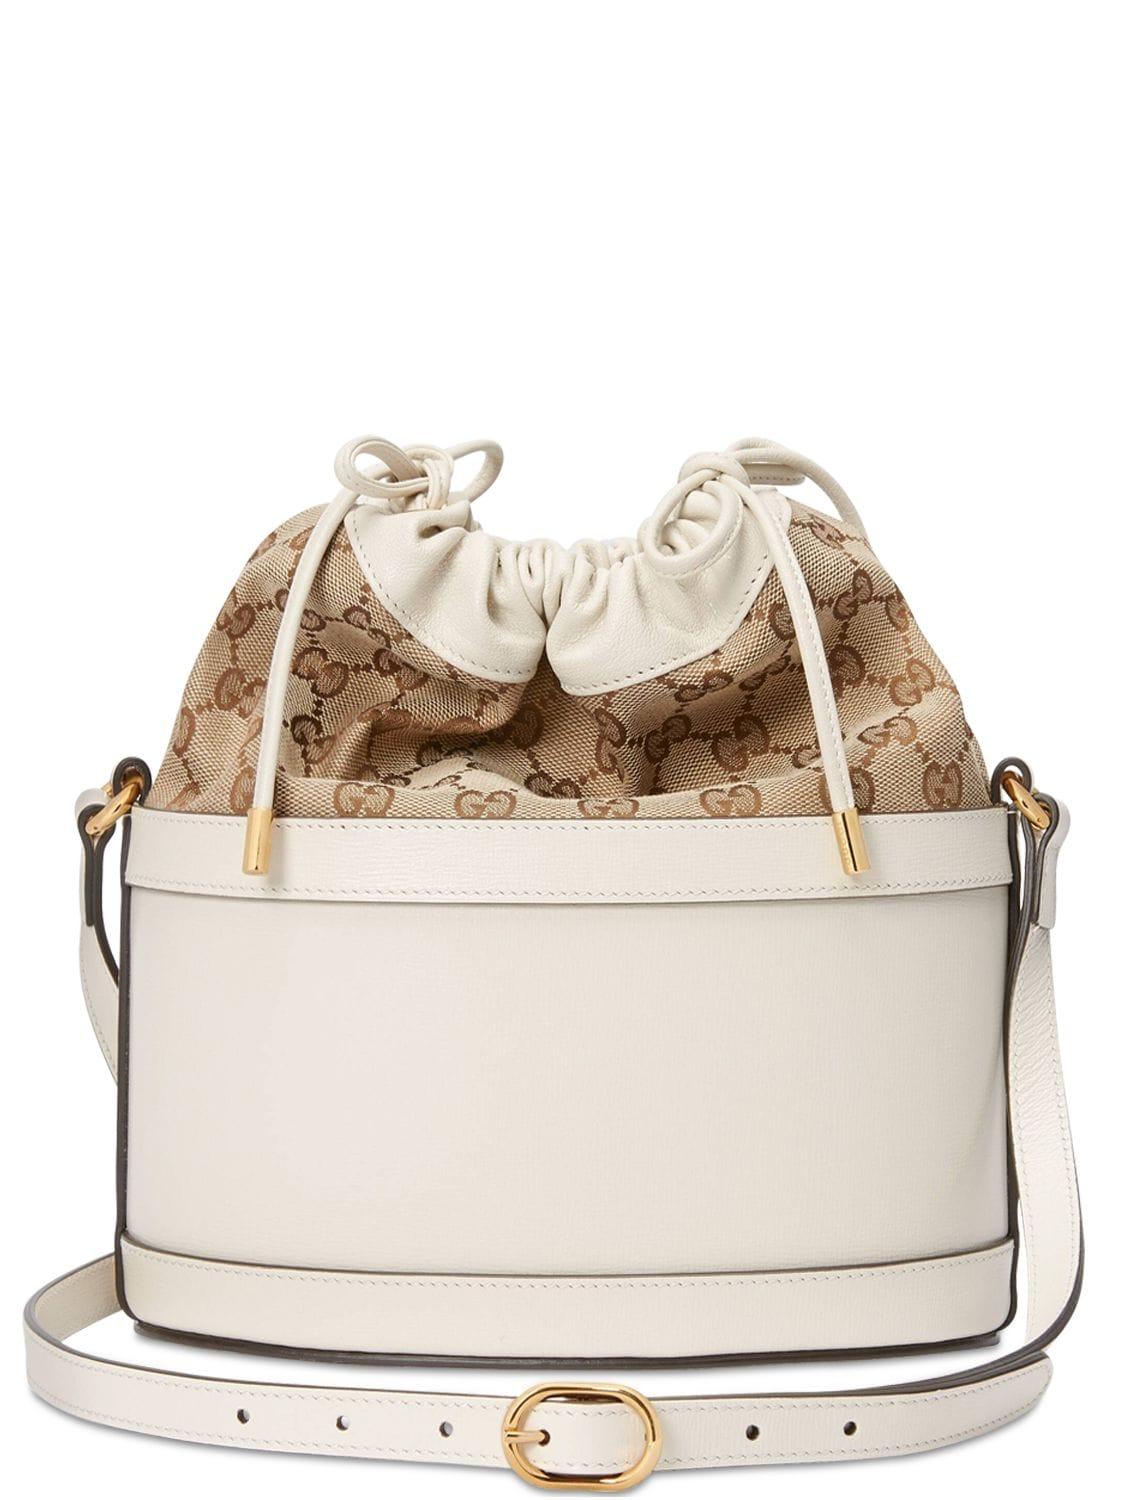 Gucci 1955 Horsebit White Leather Bucket Bag – Queen Bee of